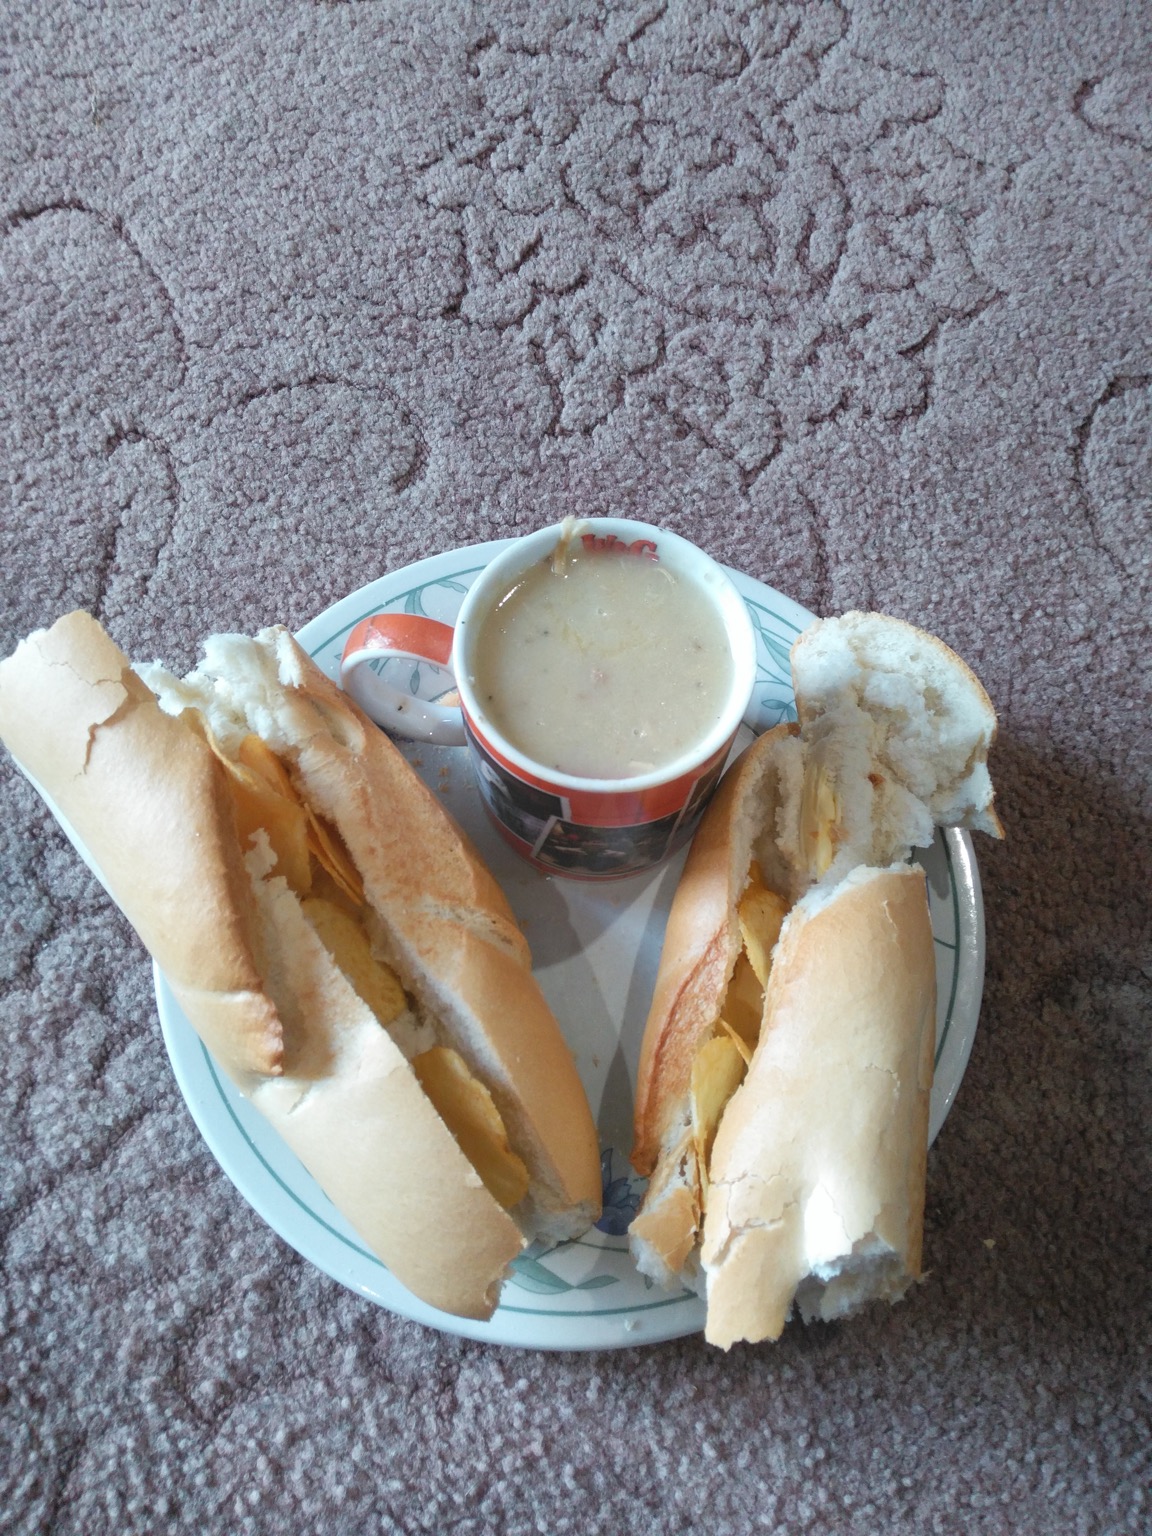 Torn crisp baguette alongside a Cup-a-Soup